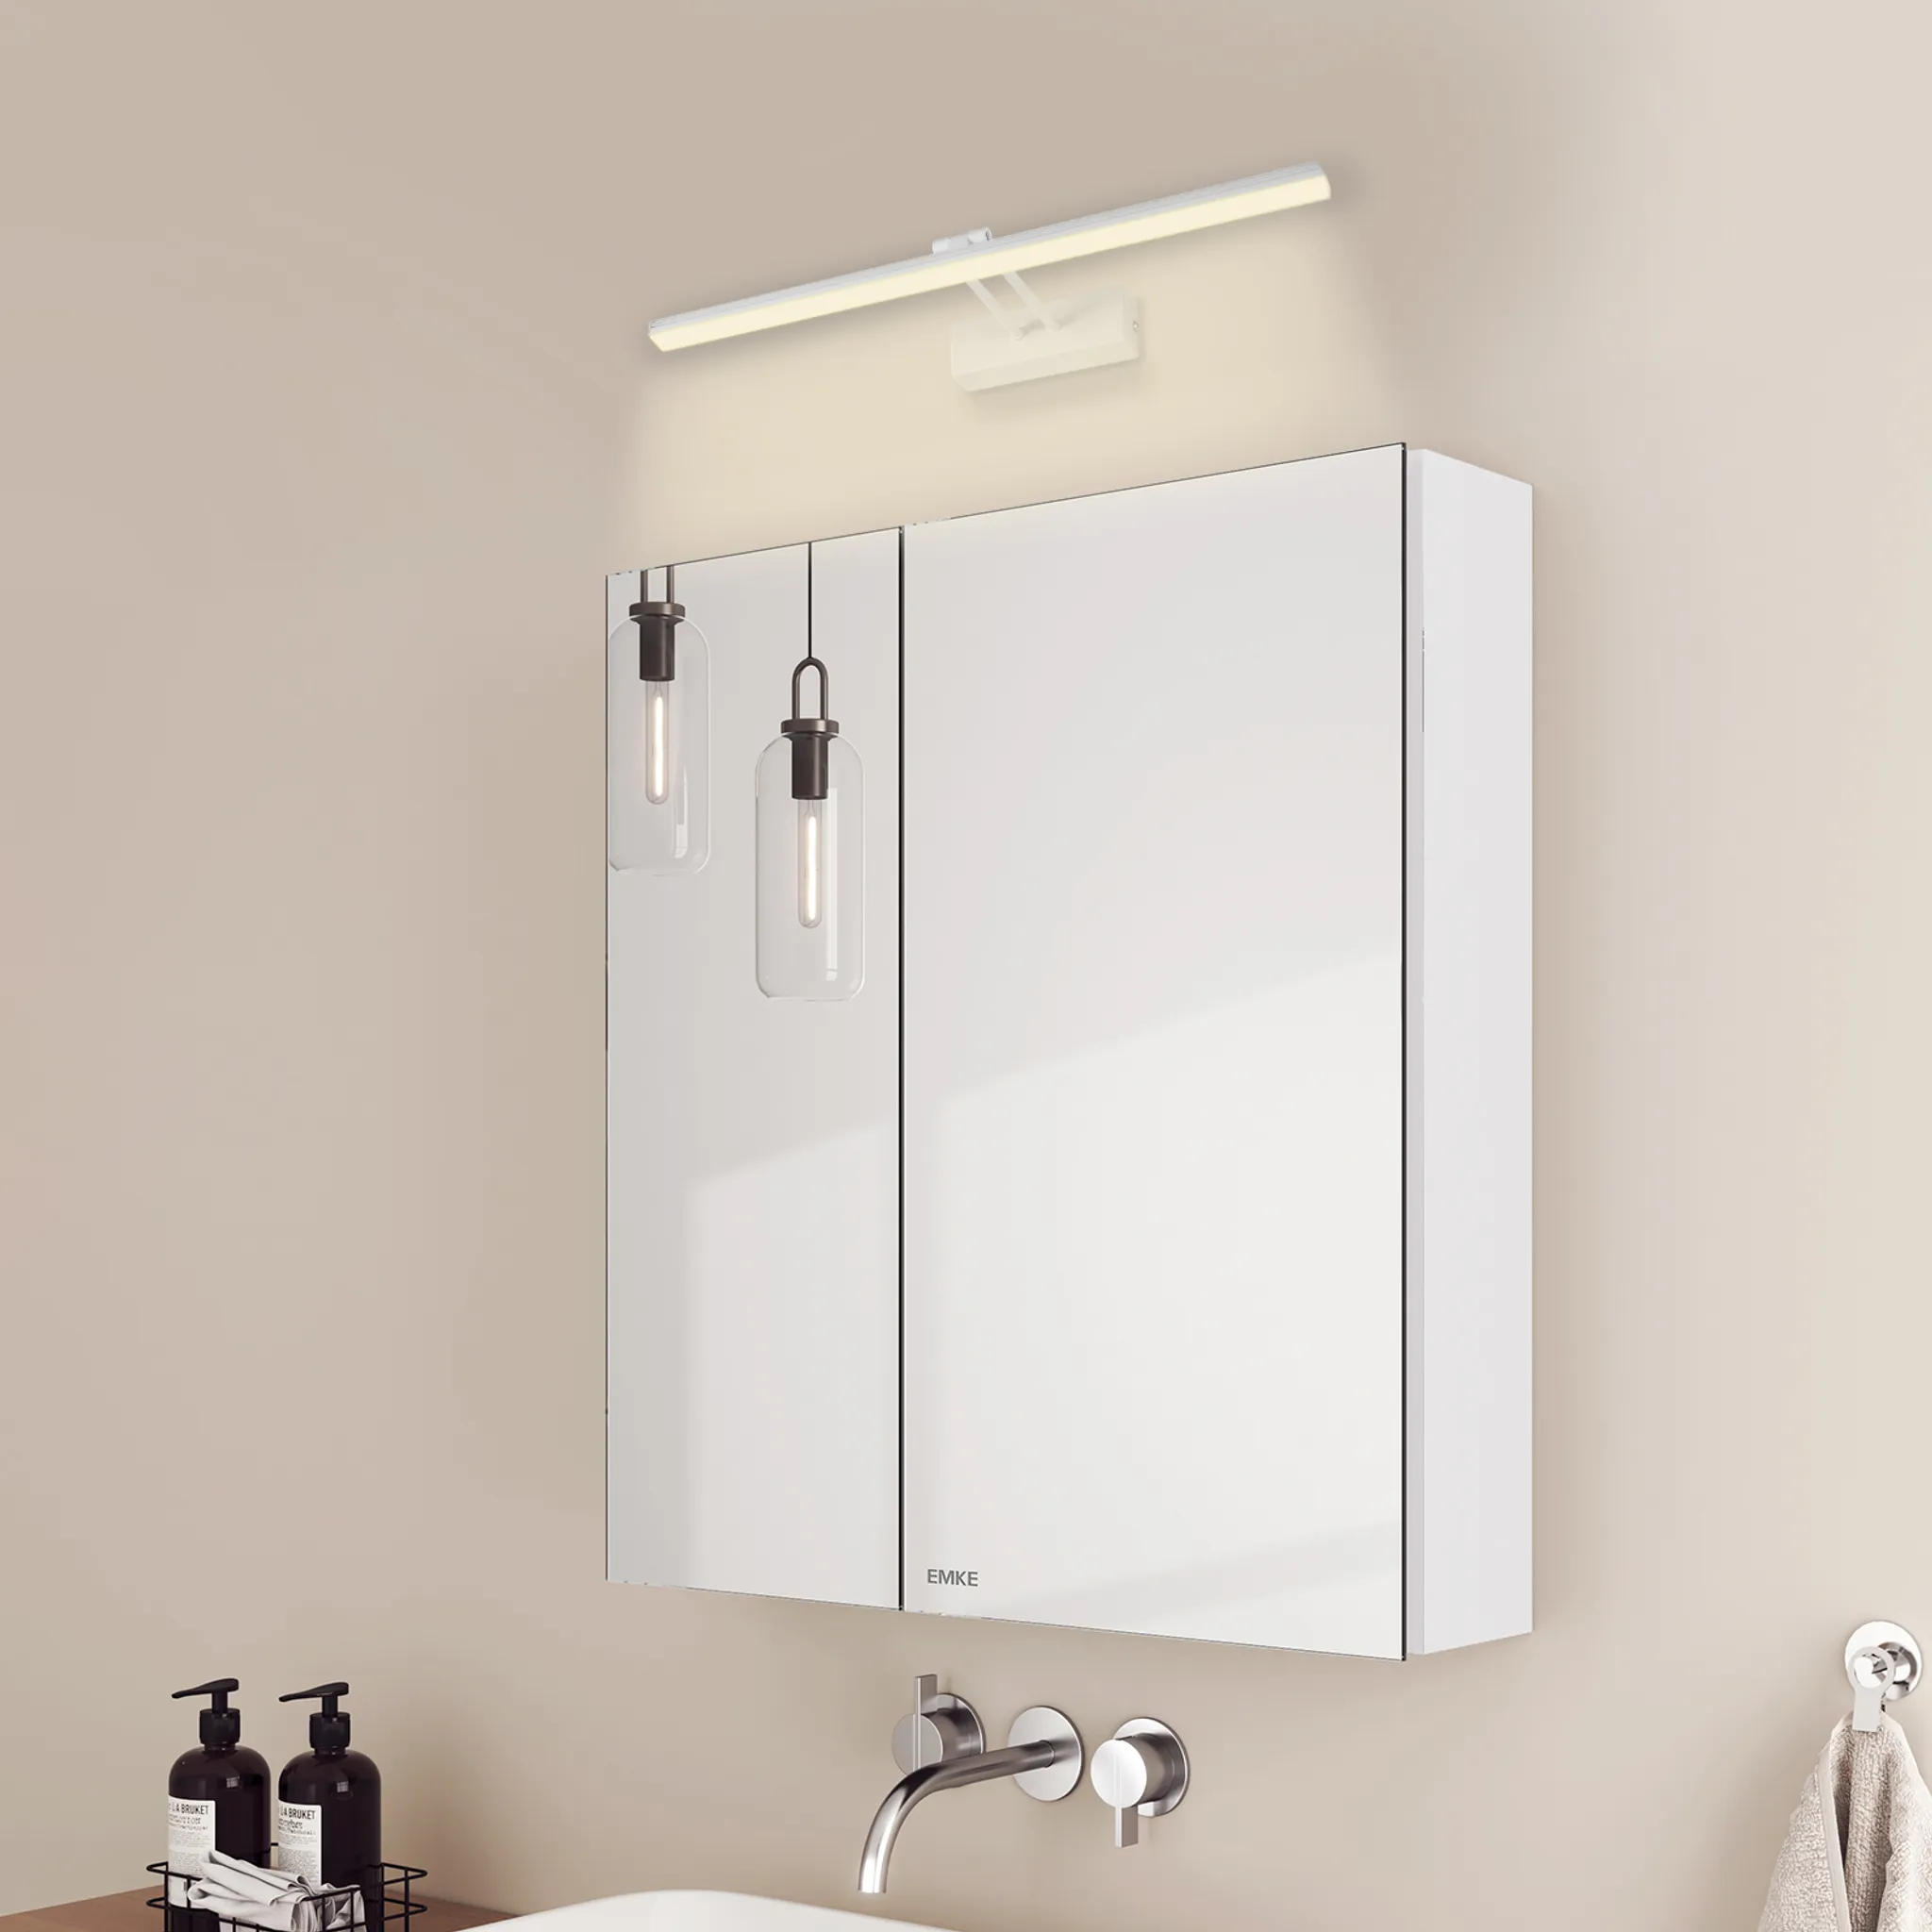 EMKE Spiegelschrank und Glasböden Licht 2 Weiß Spiegellampen,60x65x14.5cm und Weiß 4200k Neutral Badspiegelschrank Wandleuchten